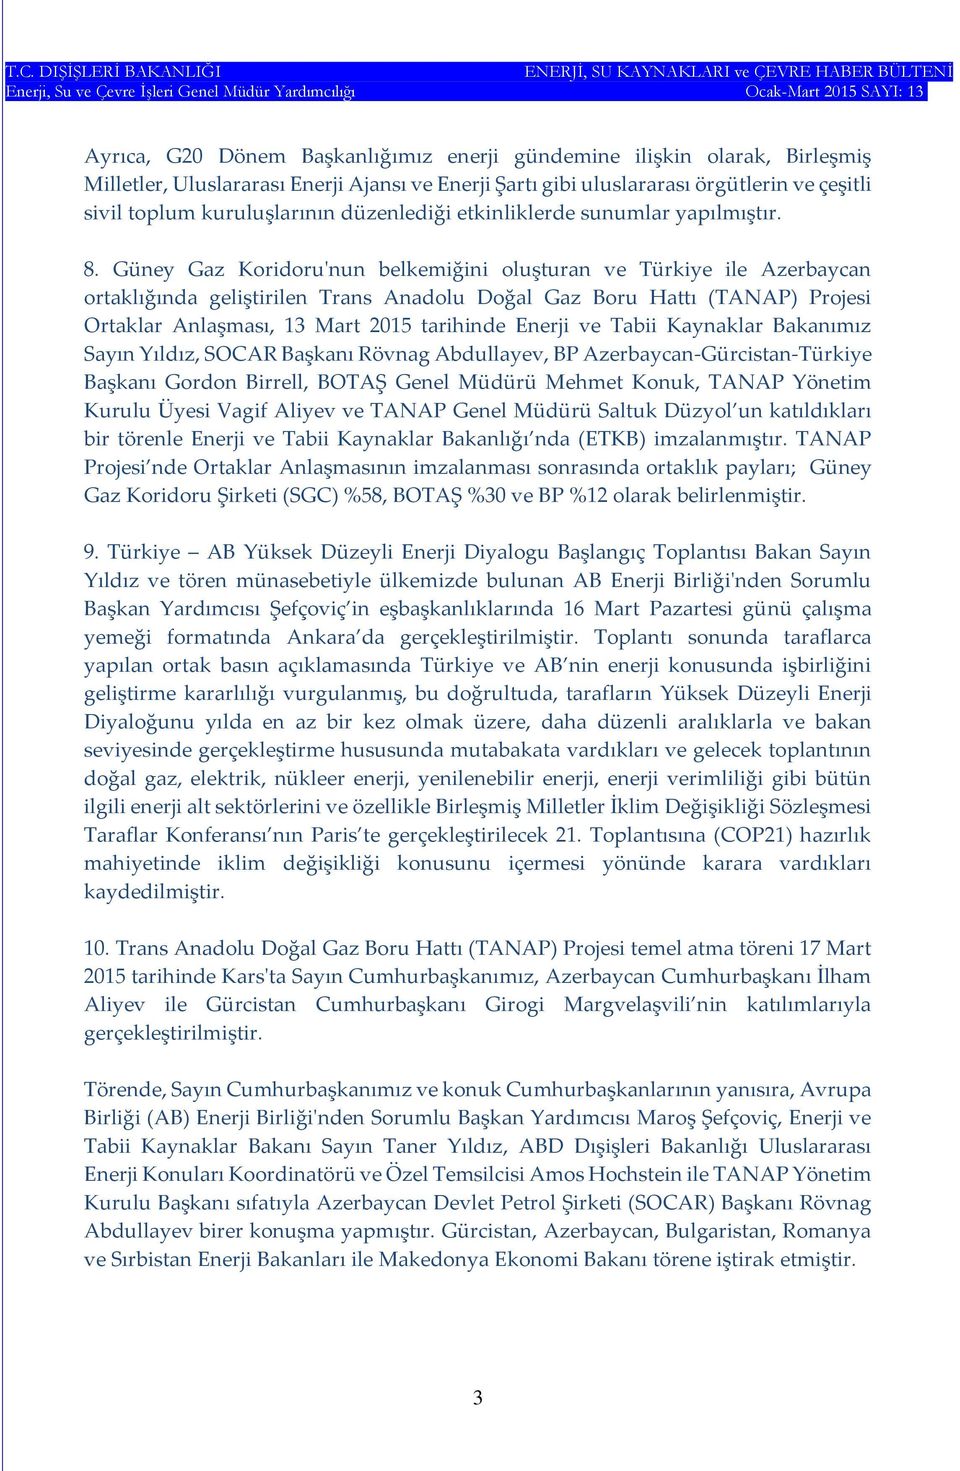 Güney Gaz Koridoru'nun belkemiğini oluşturan ve Türkiye ile Azerbaycan ortaklığında geliştirilen Trans Anadolu Doğal Gaz Boru Hattı (TANAP) Projesi Ortaklar Anlaşması, 13 Mart 2015 tarihinde Enerji